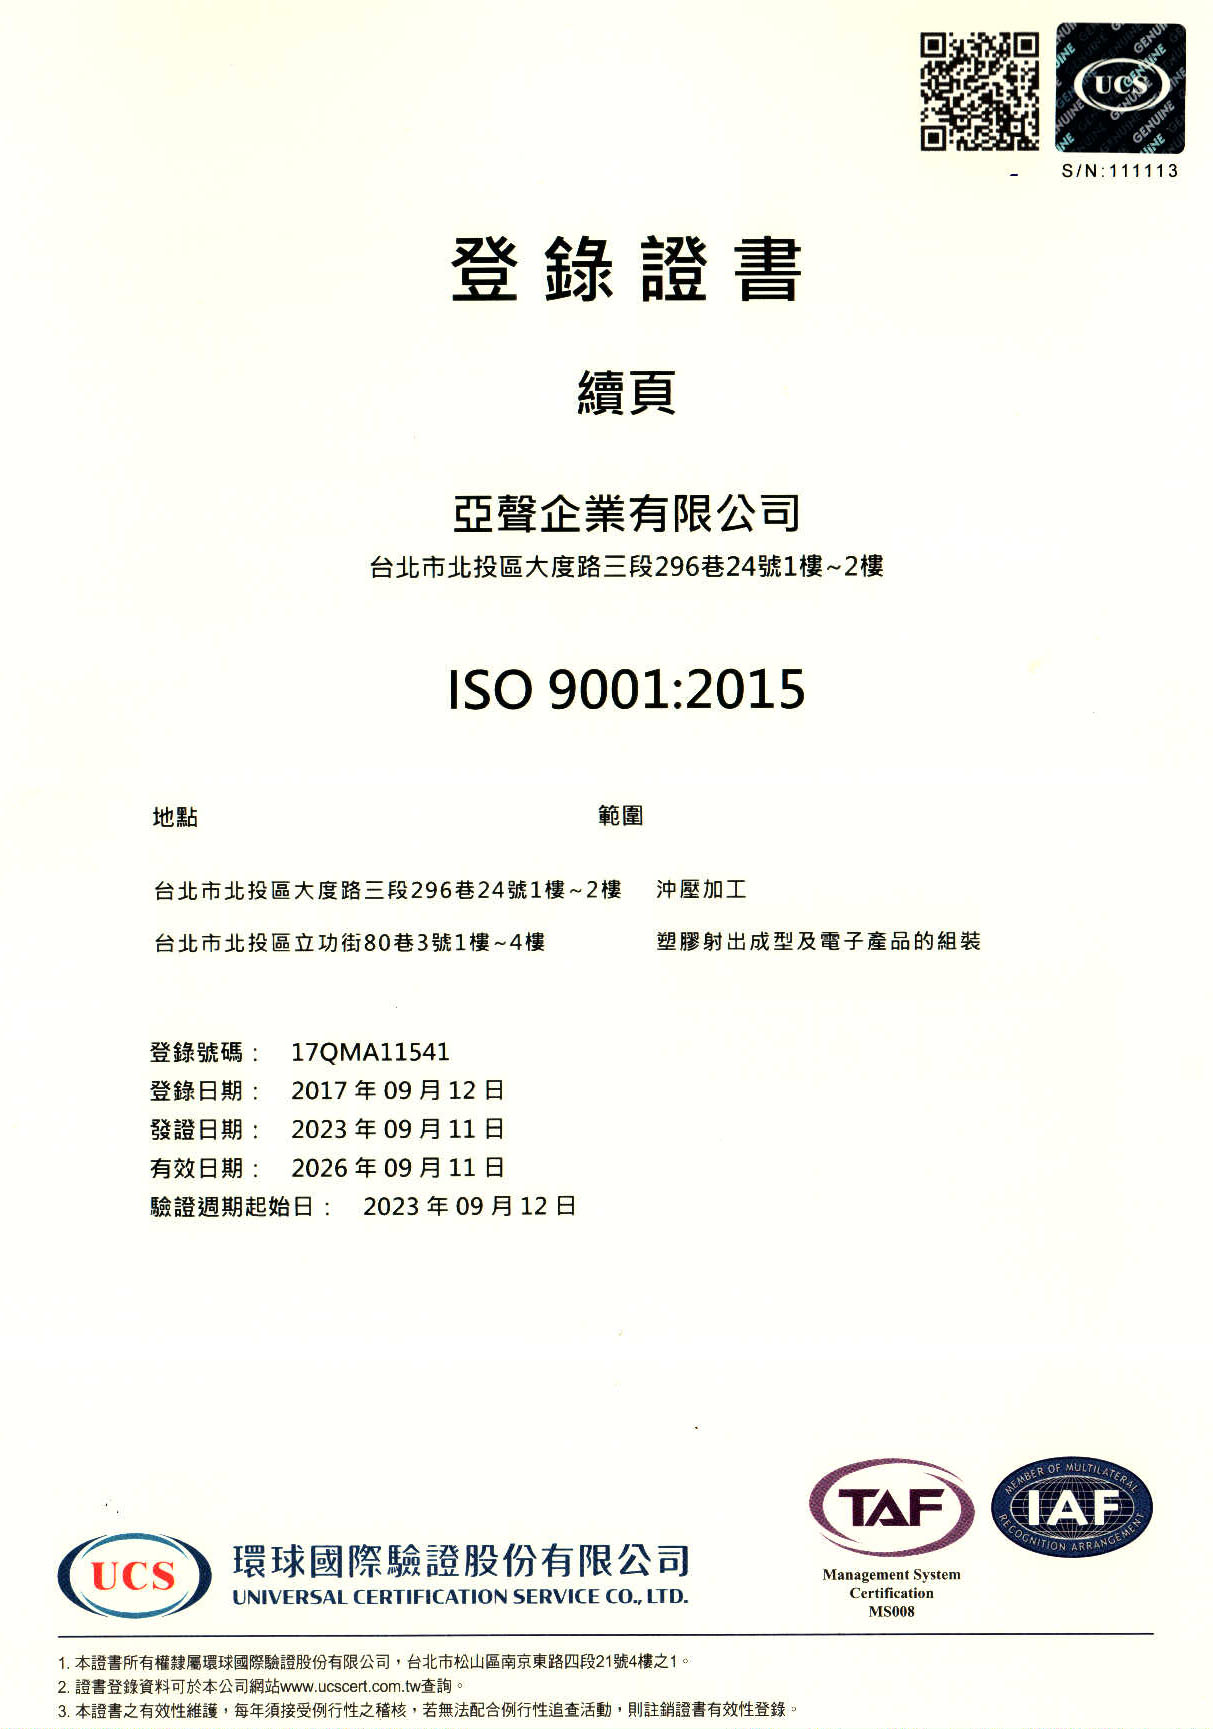 亞聲ISO 9001 中文證書續頁